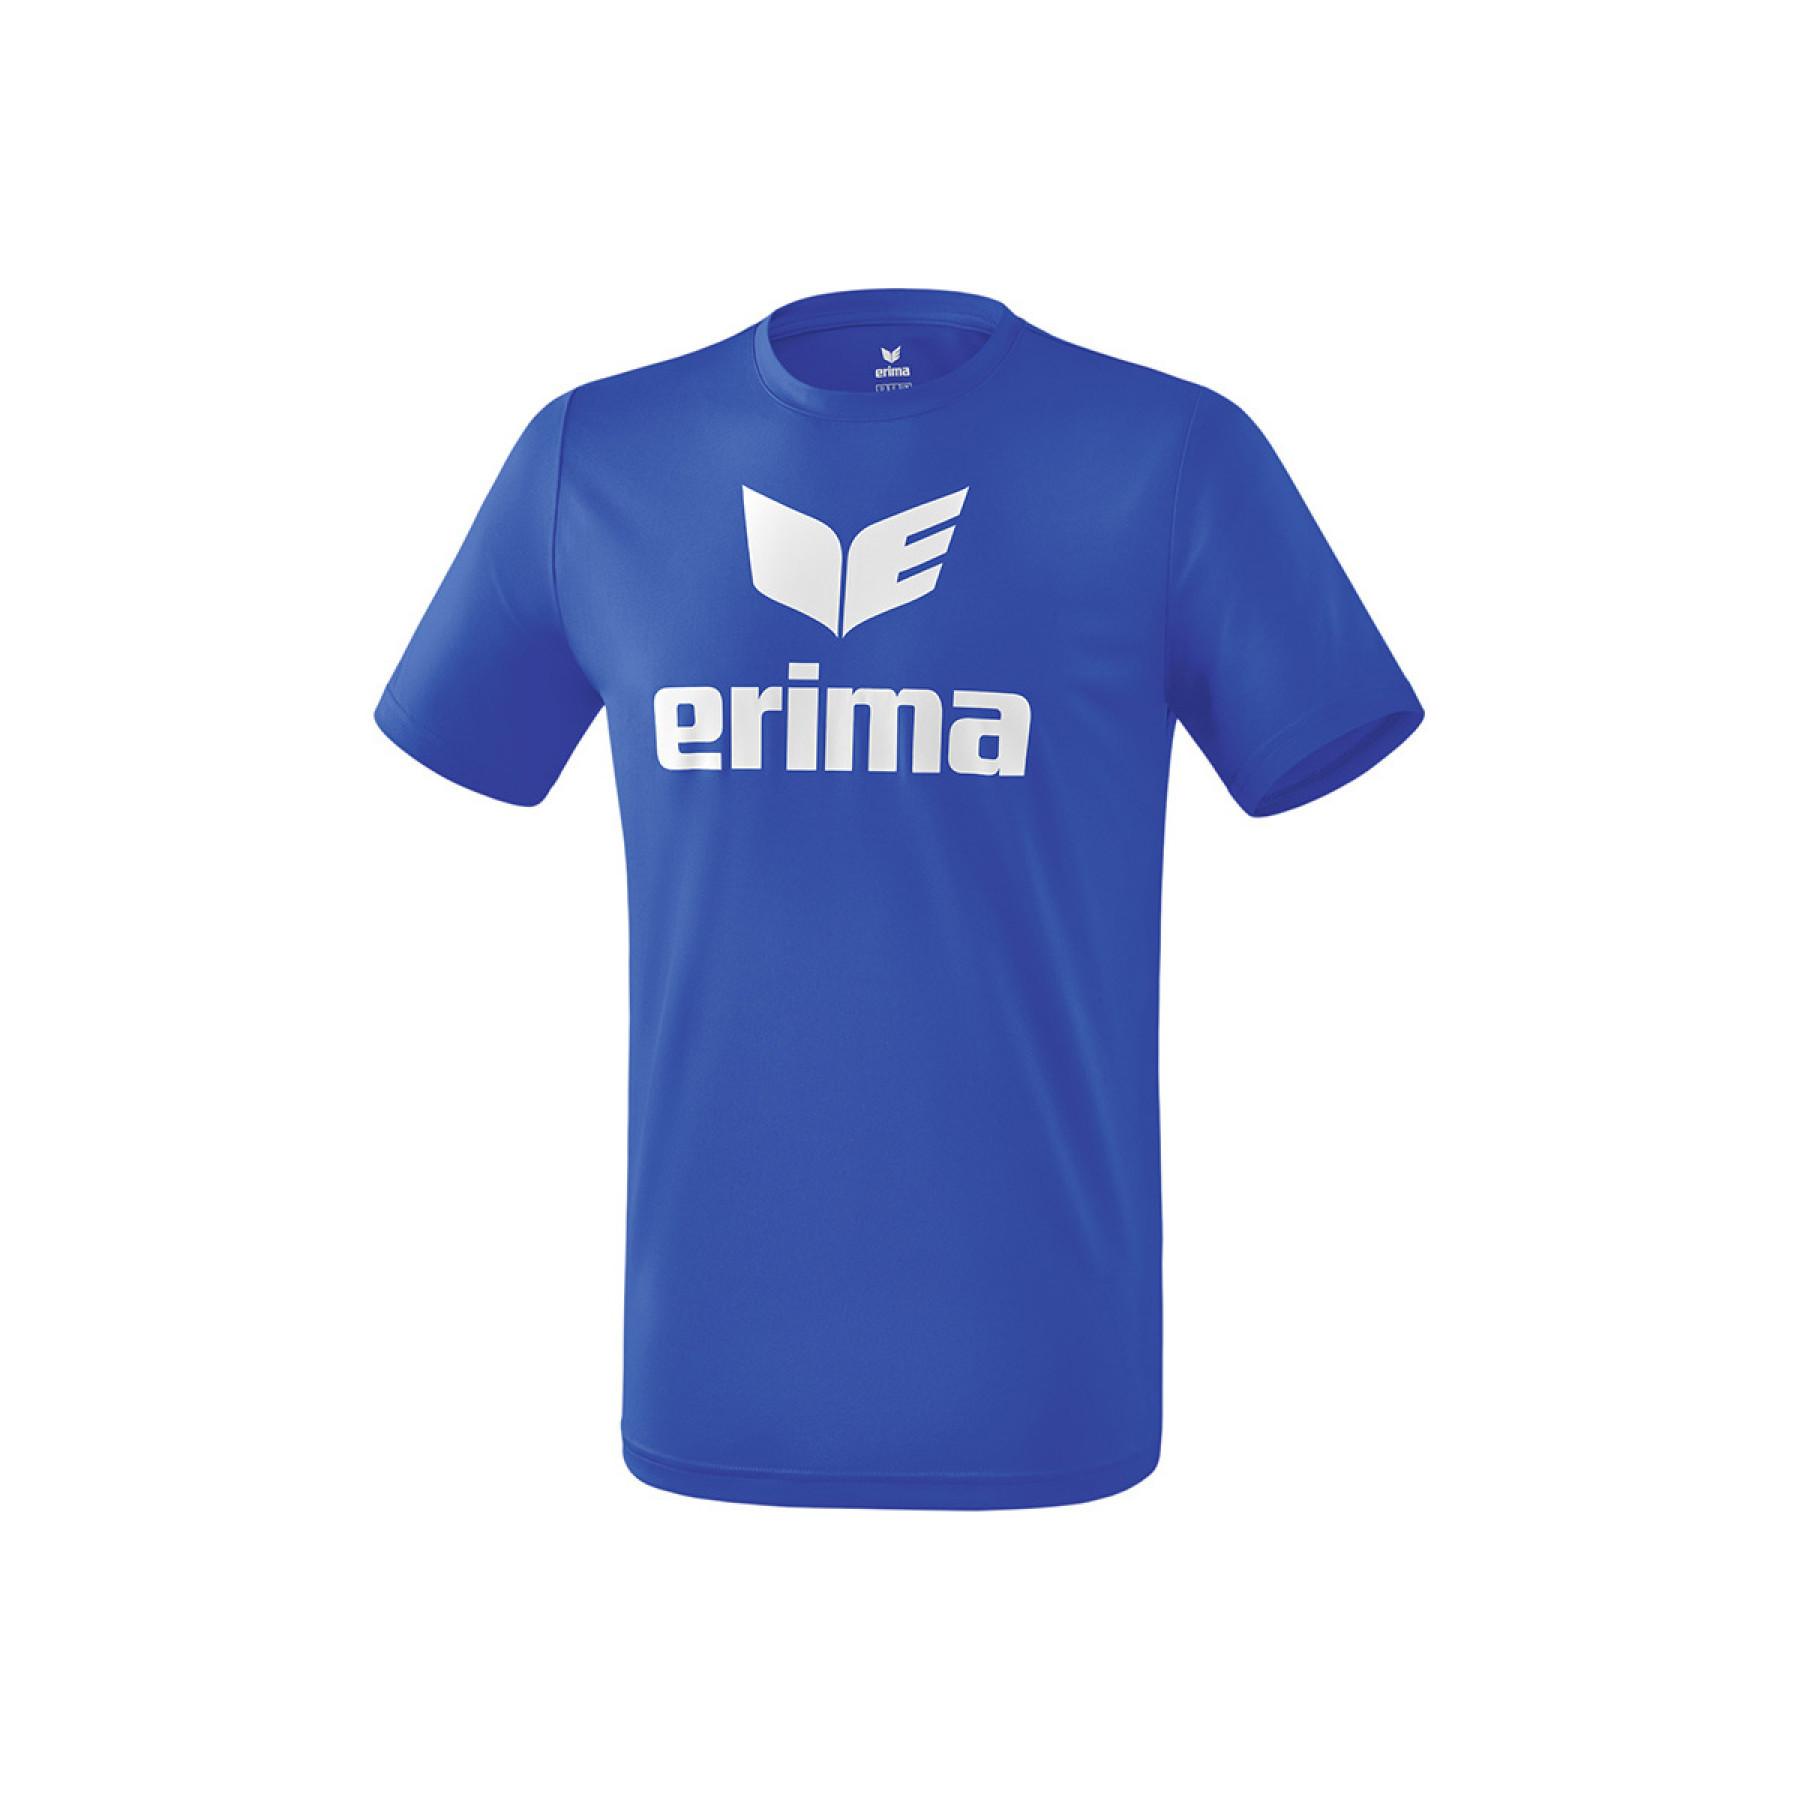 T-shirt criança Erima promo funcional